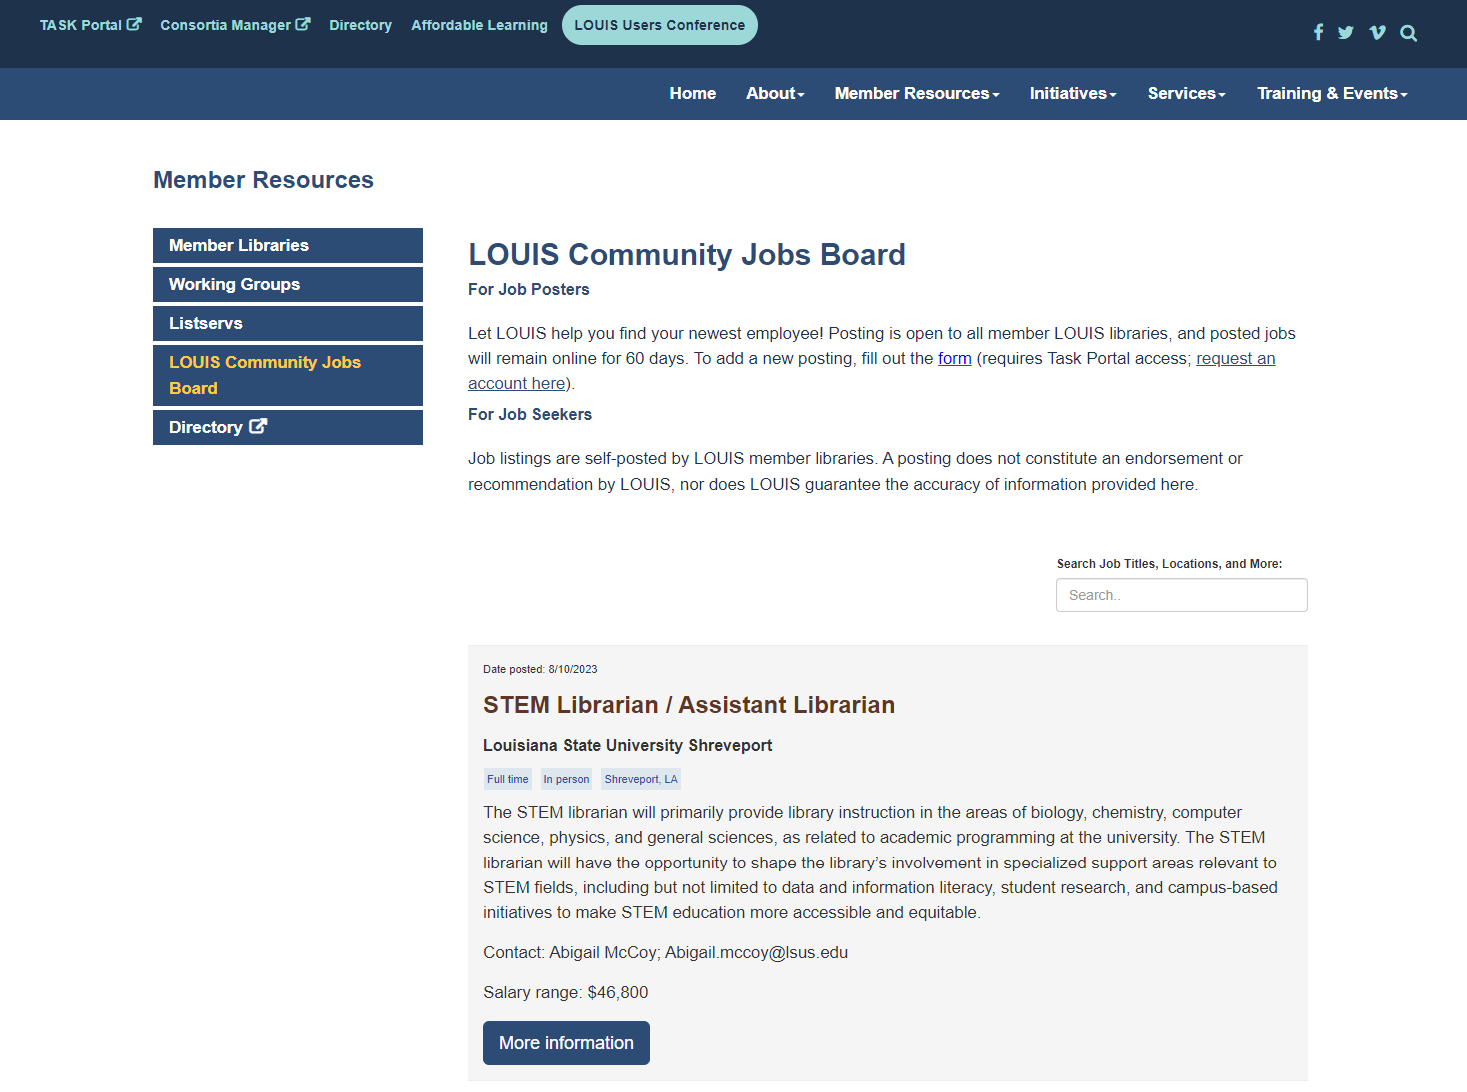 LOUIS Community Jobs Board